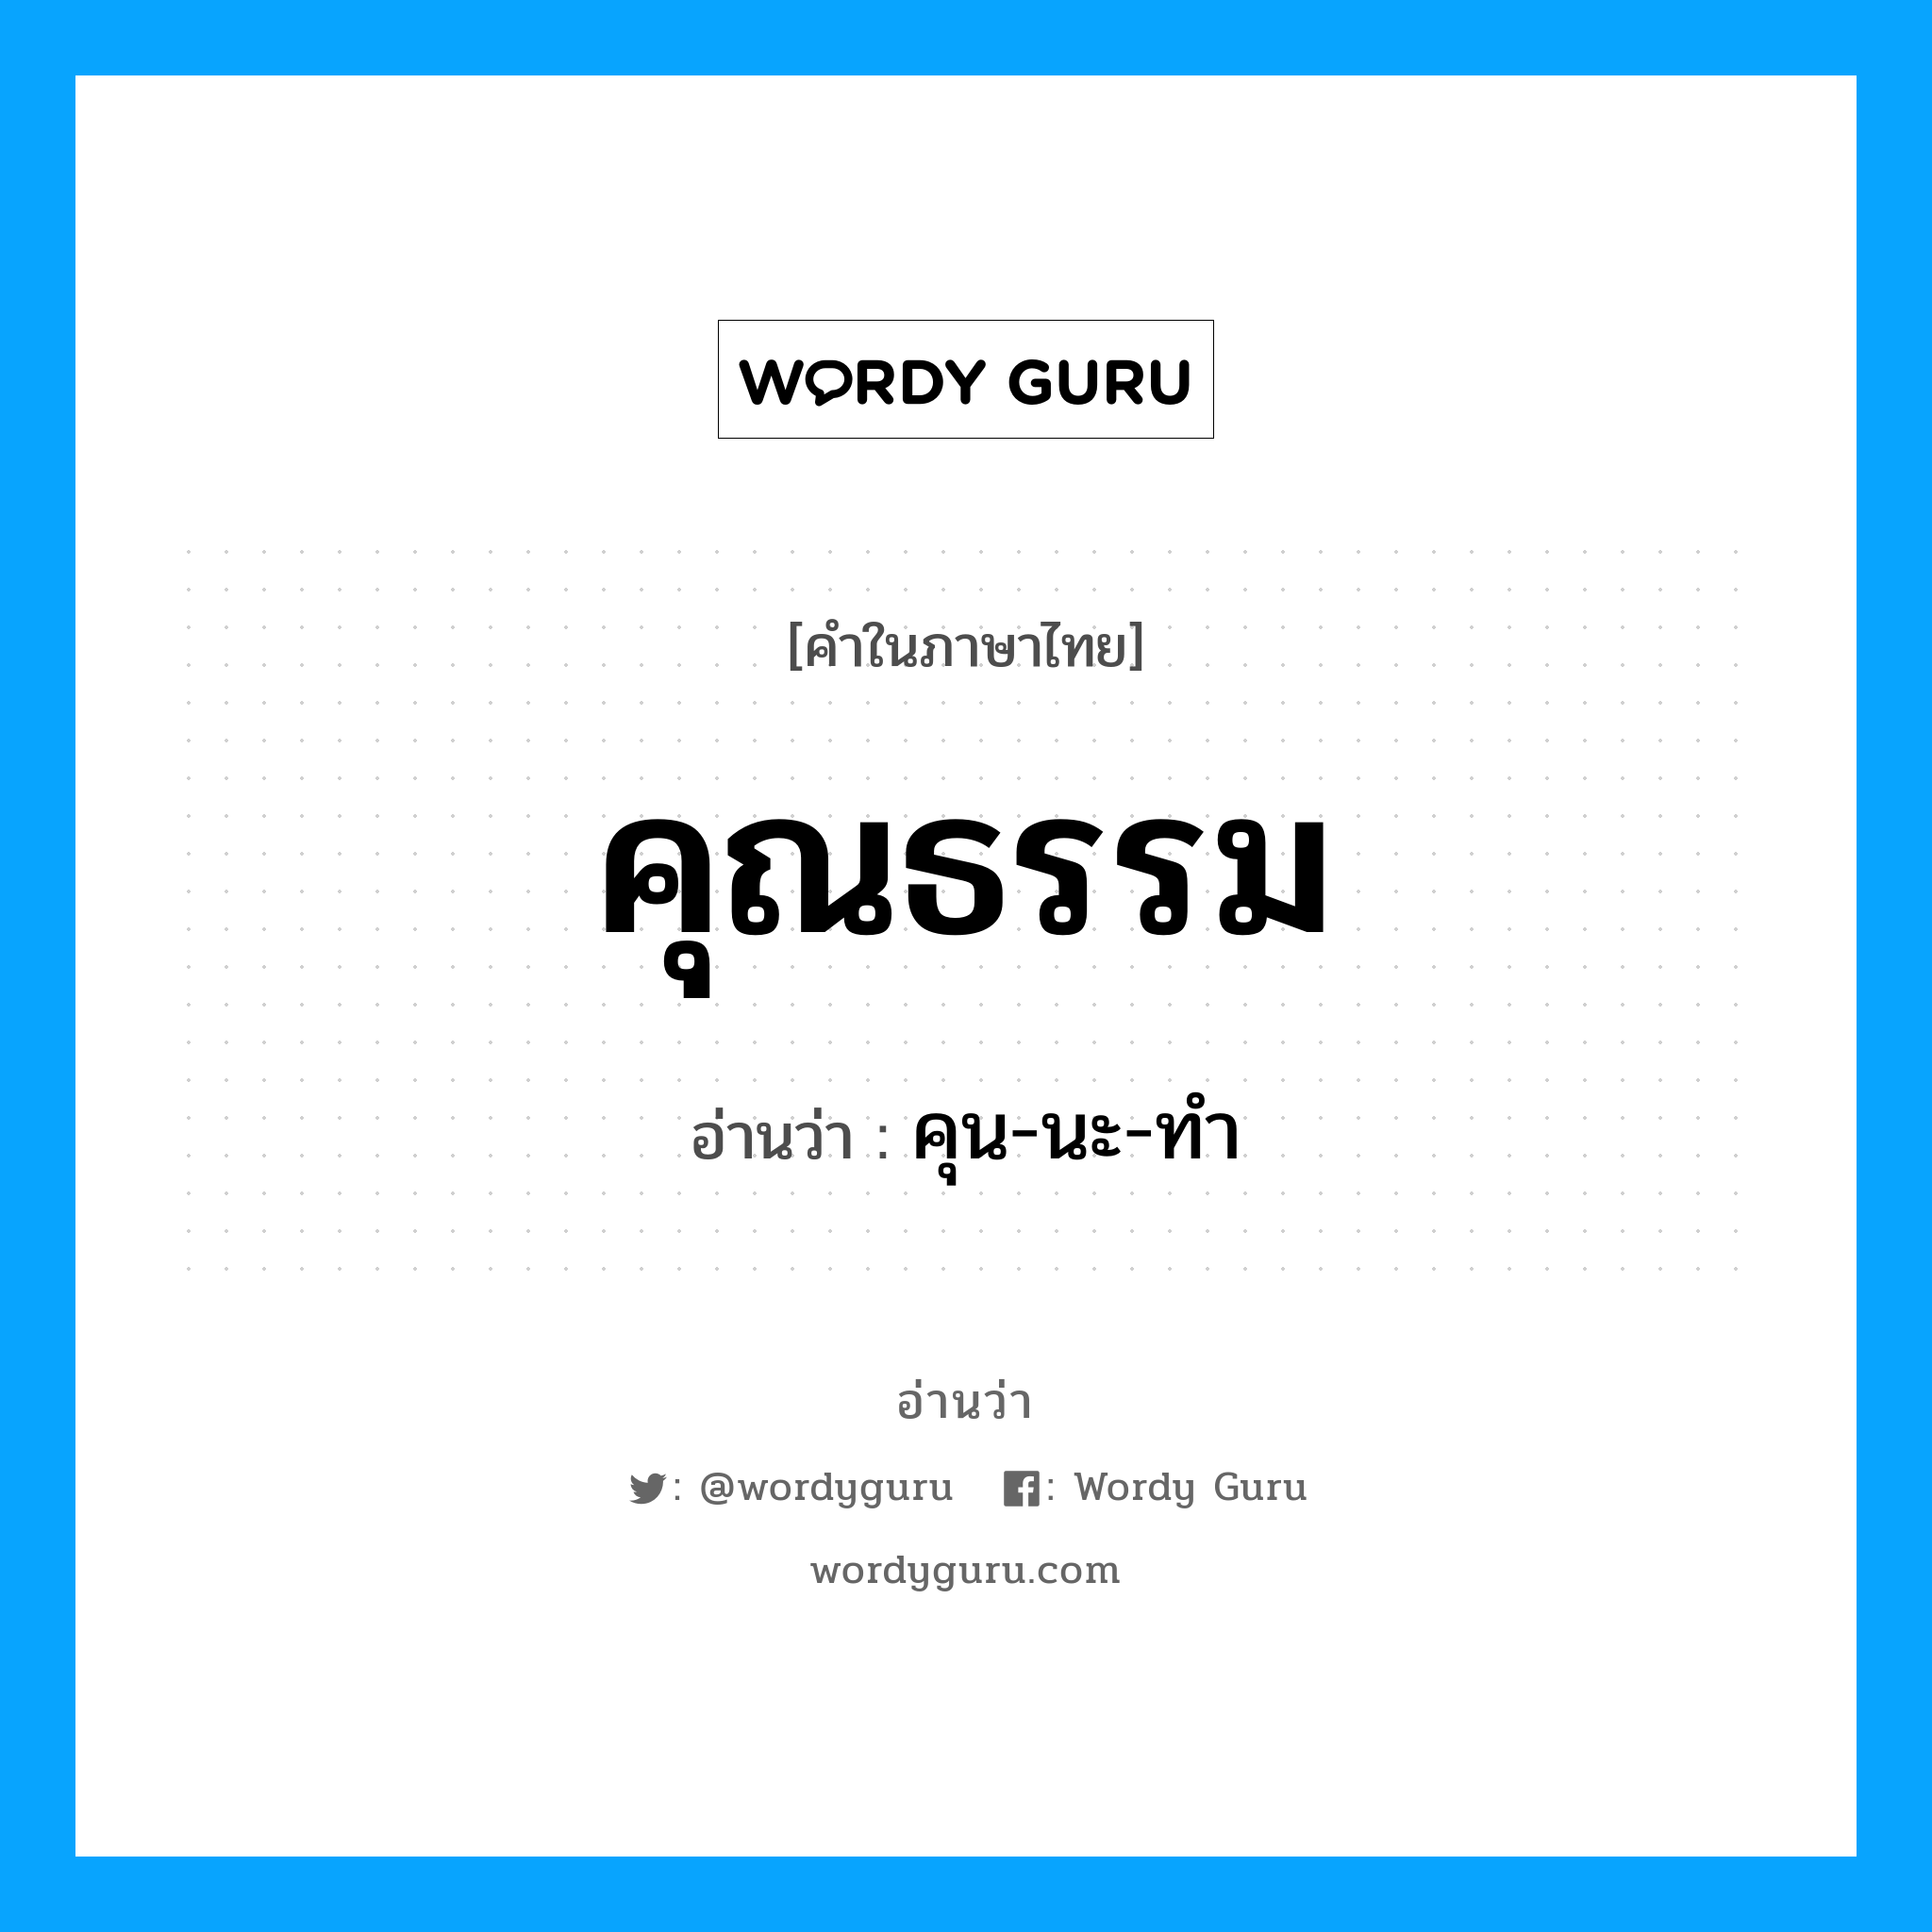 คุน-นะ-ทำ เป็นคำอ่านของคำไหน?, คำในภาษาไทย คุน-นะ-ทำ อ่านว่า คุณธรรม